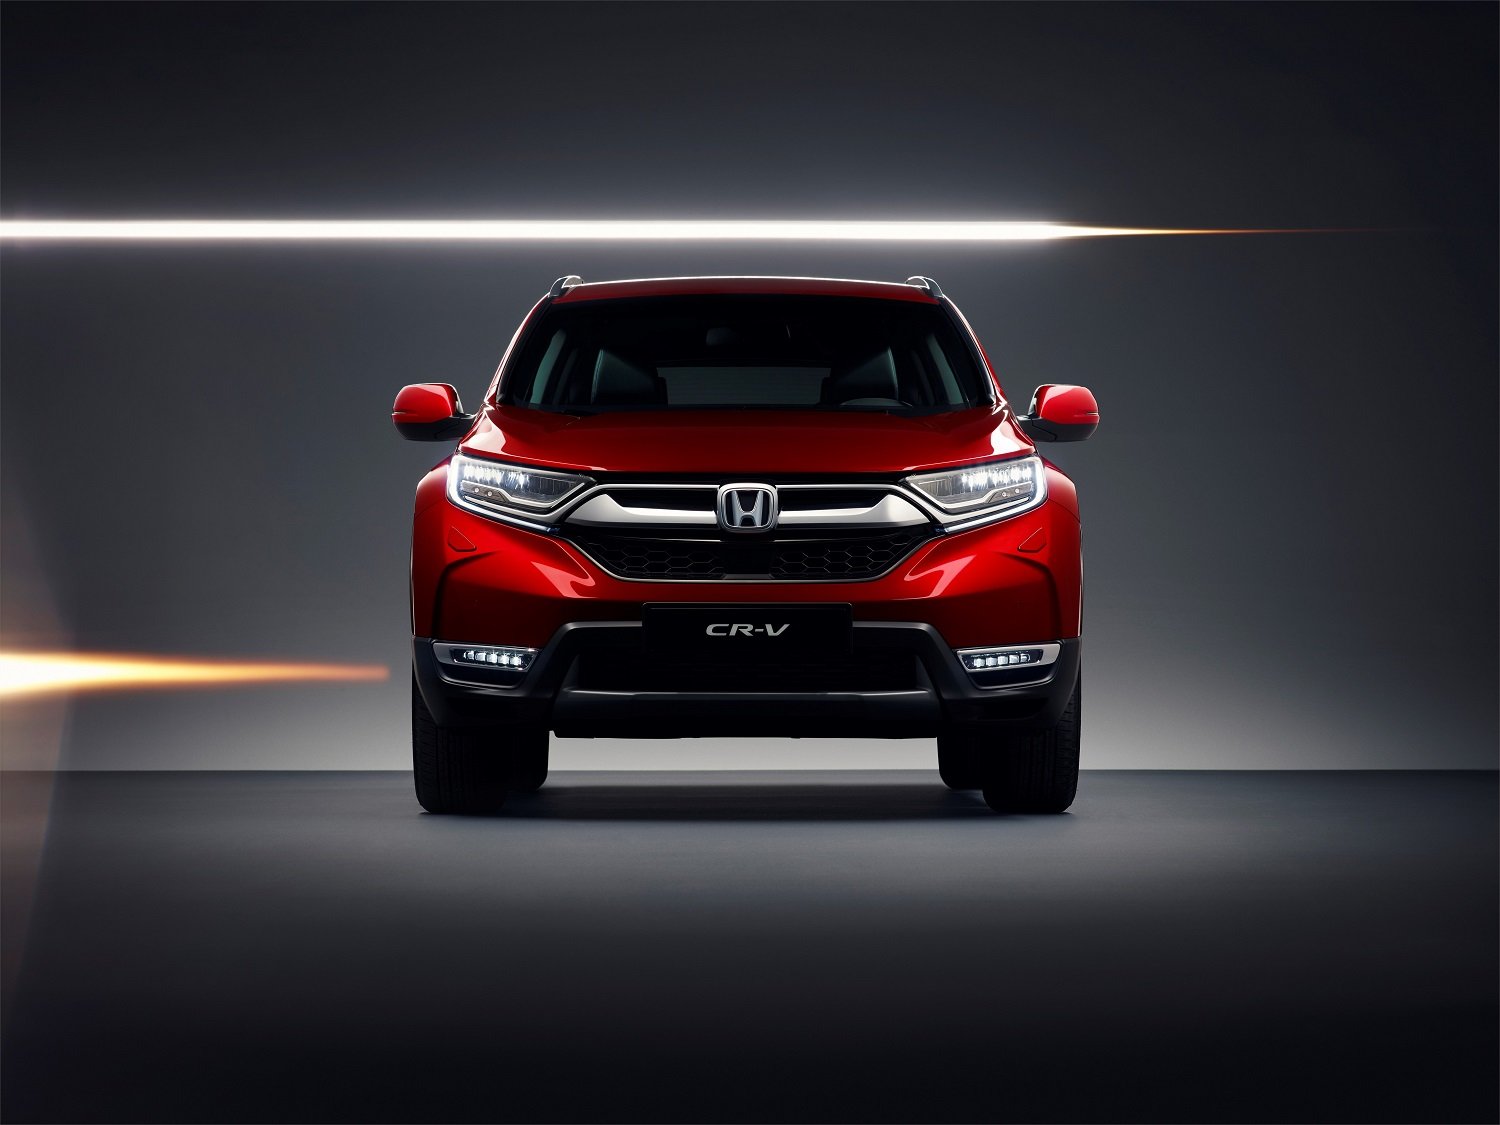 Honda představí na ženevském autosalonu zcela nový model CR-V